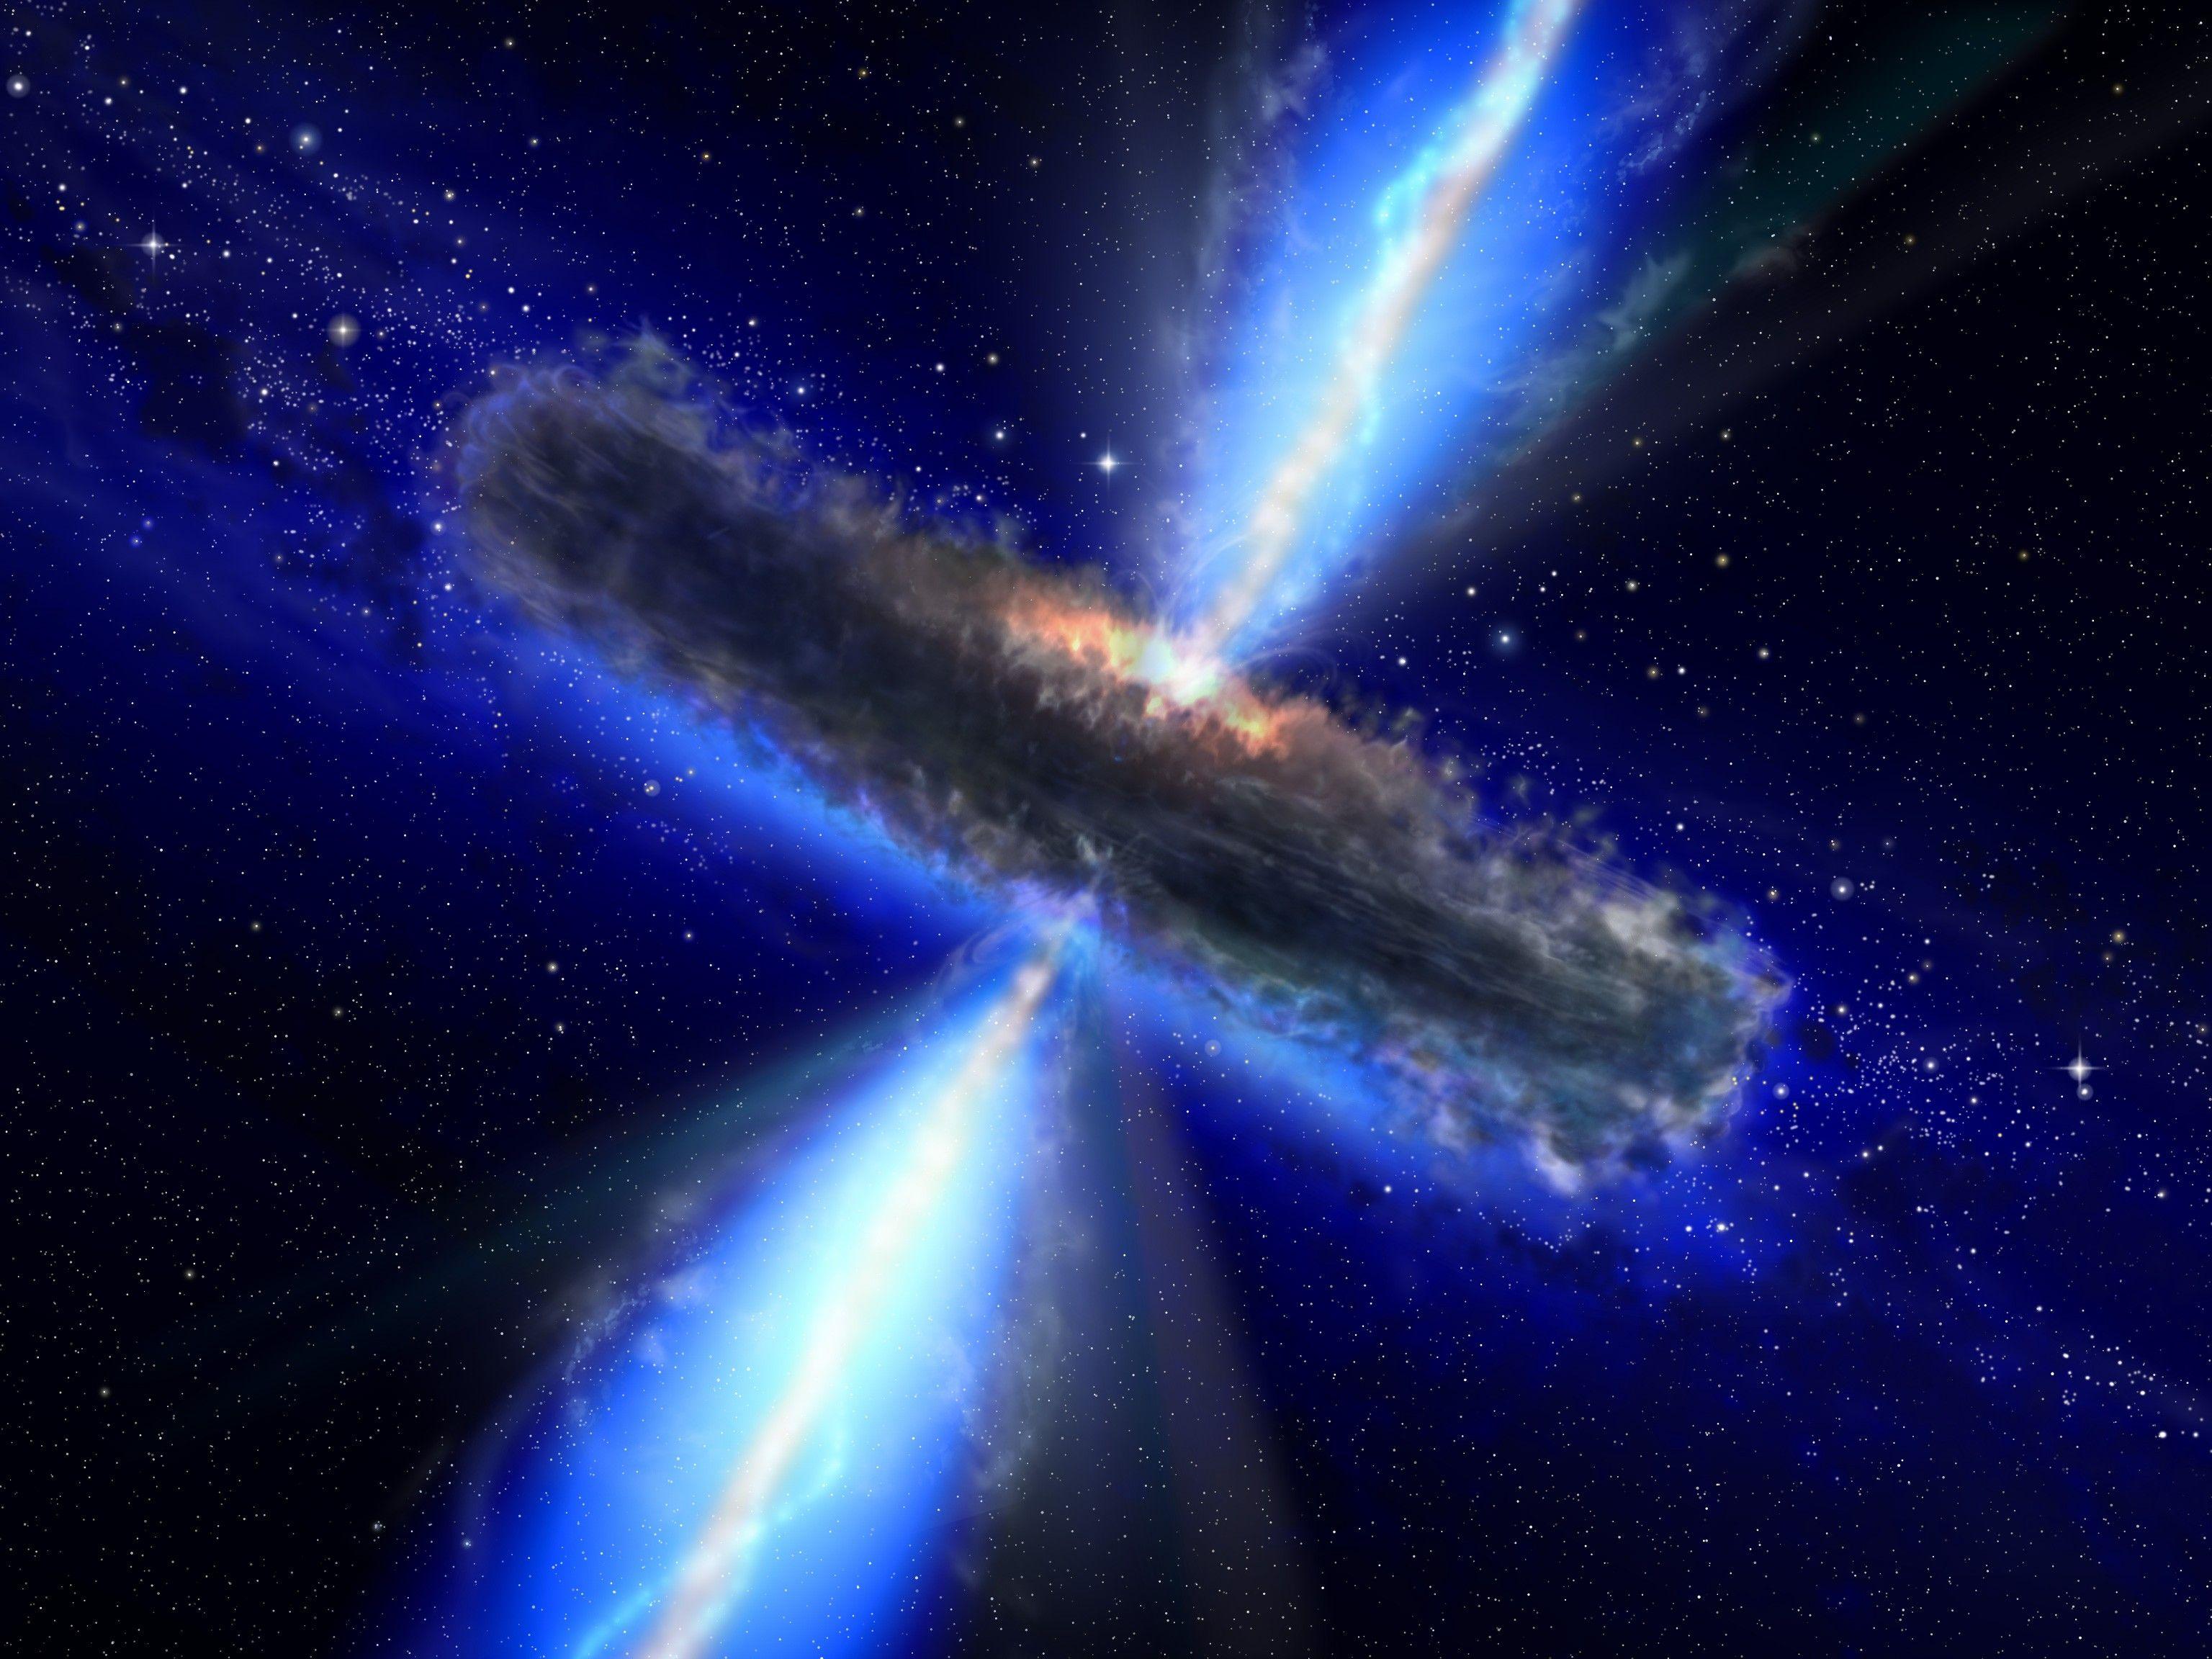 Hình nền máy tính quasar: Trang trí máy tính của bạn với hình nền độc đáo và hiện đại. Hình ảnh Quasar với sự phong phú về bầu trời sao sẽ mang đến cho bạn một không gian làm việc và giải trí tuyệt vời. Thể hiện sự chuyên nghiệp và sáng tạo của bạn cùng với hình nền máy tính Quasar.